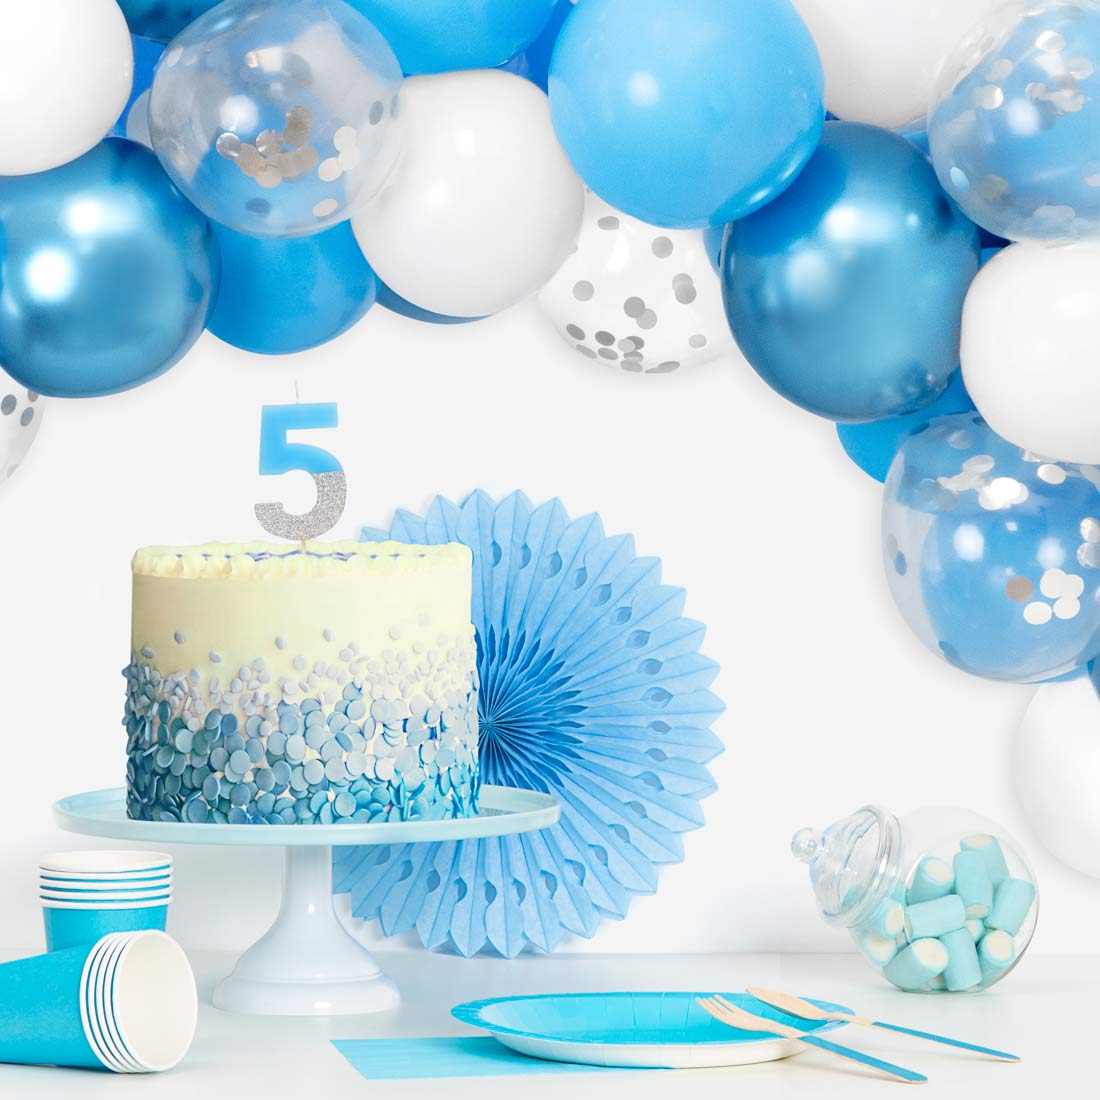 Blau, Weiß, Metallic Blue und Transparent Ballon Set mit Konfetti